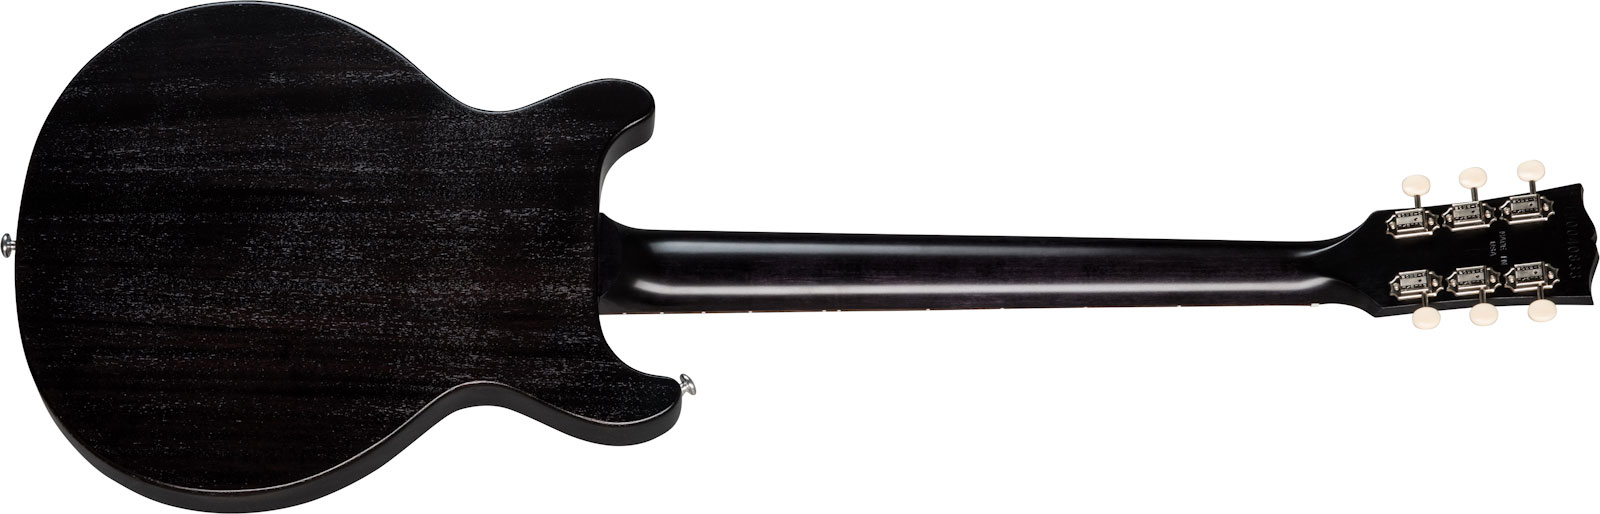 Gibson Les Paul Junior Tribute Dc Modern P90 - Worn Ebony - Guitarra eléctrica de doble corte. - Variation 1